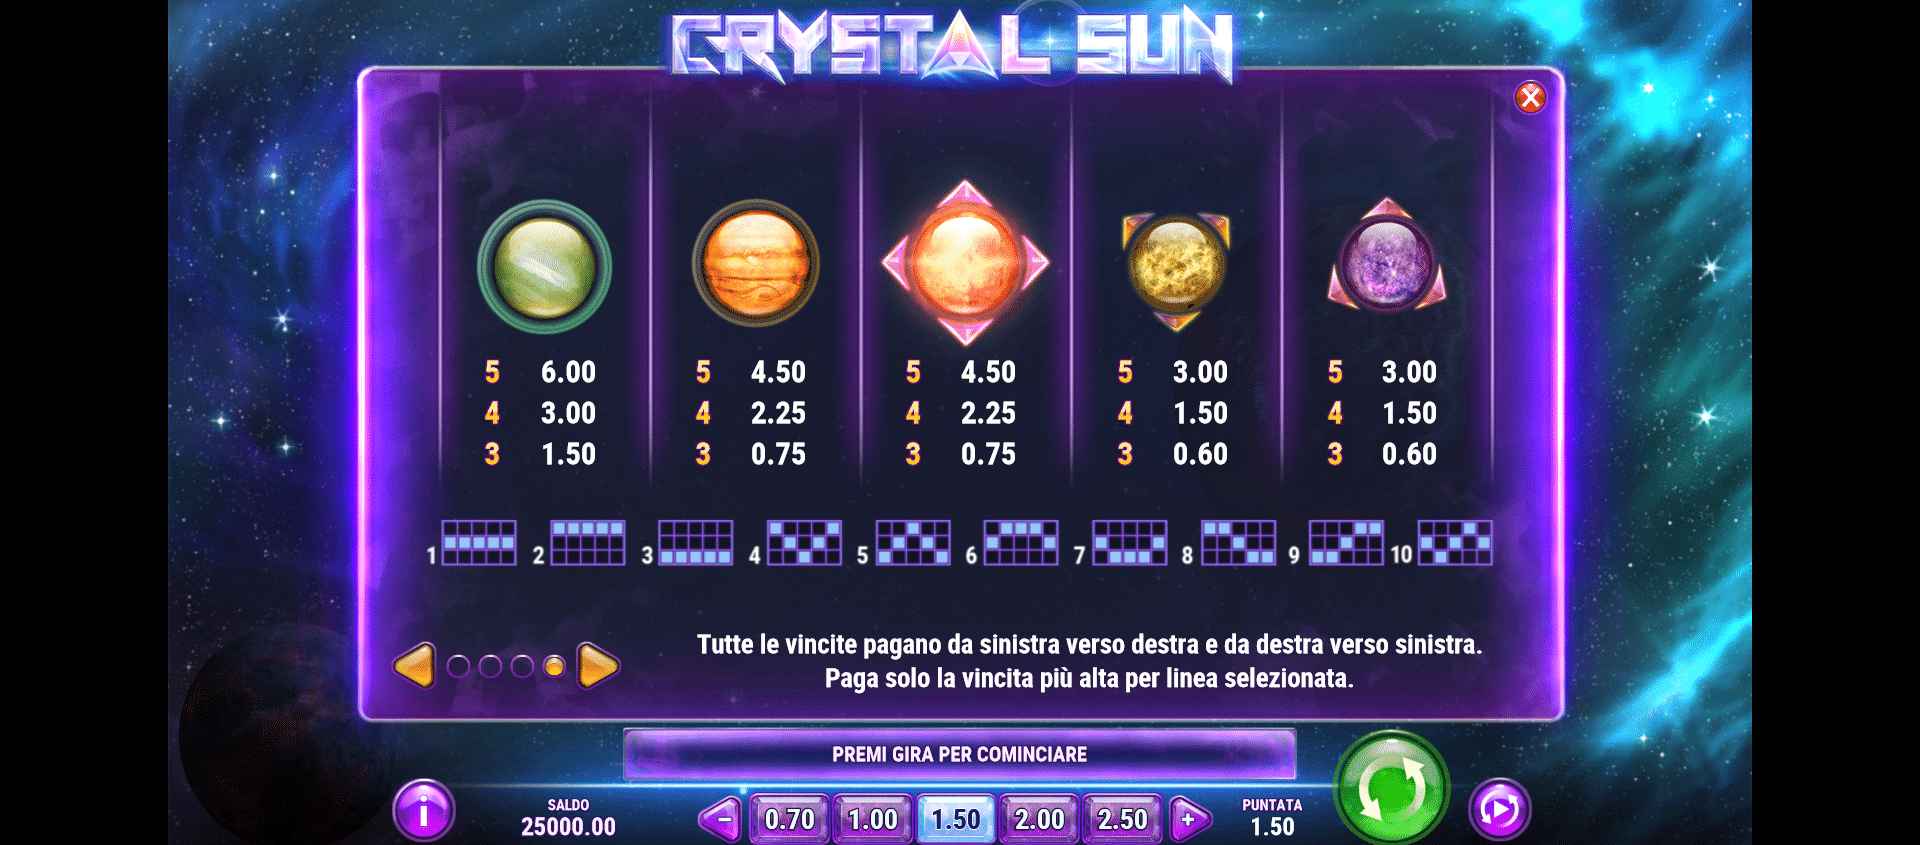 tabella delle vincite della slot machine crystal sun